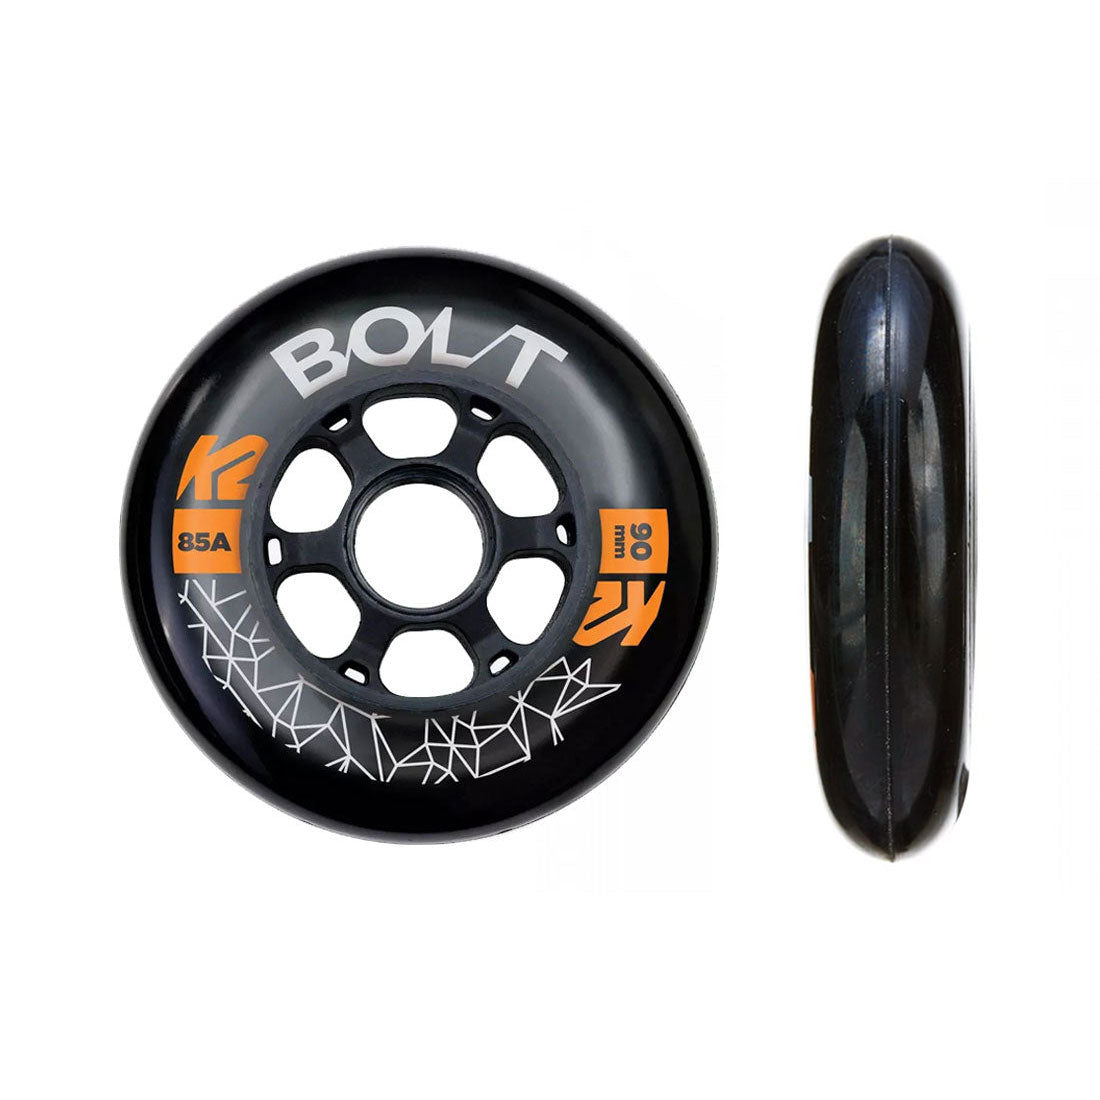 K2 Bolt Speed 90mm 85a 4pk Inline Rec Wheels